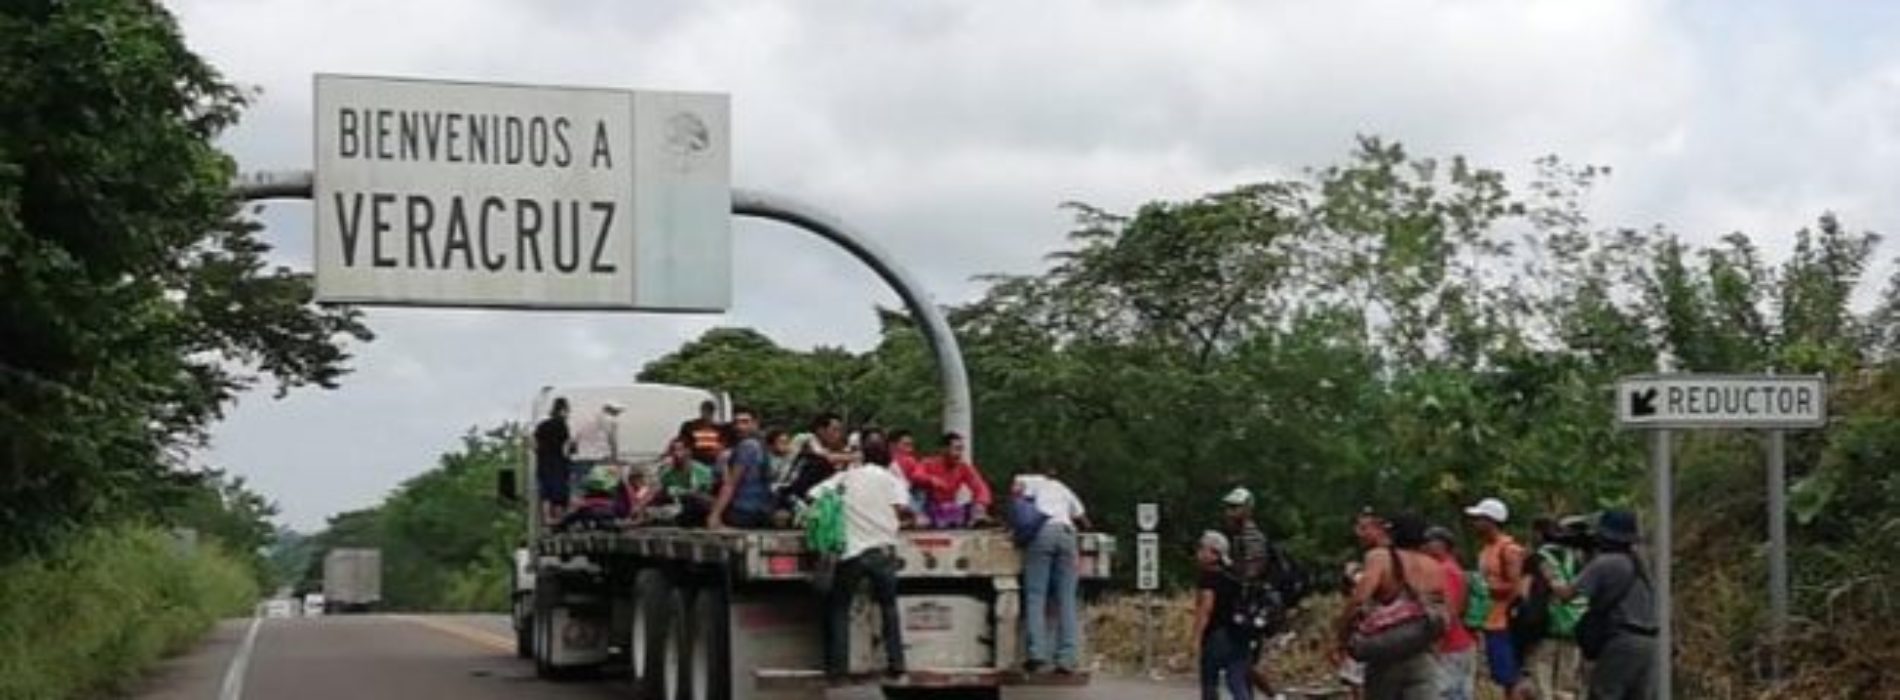 Por miedo, se va caravana directo a Veracruz y abandona
Oaxaca